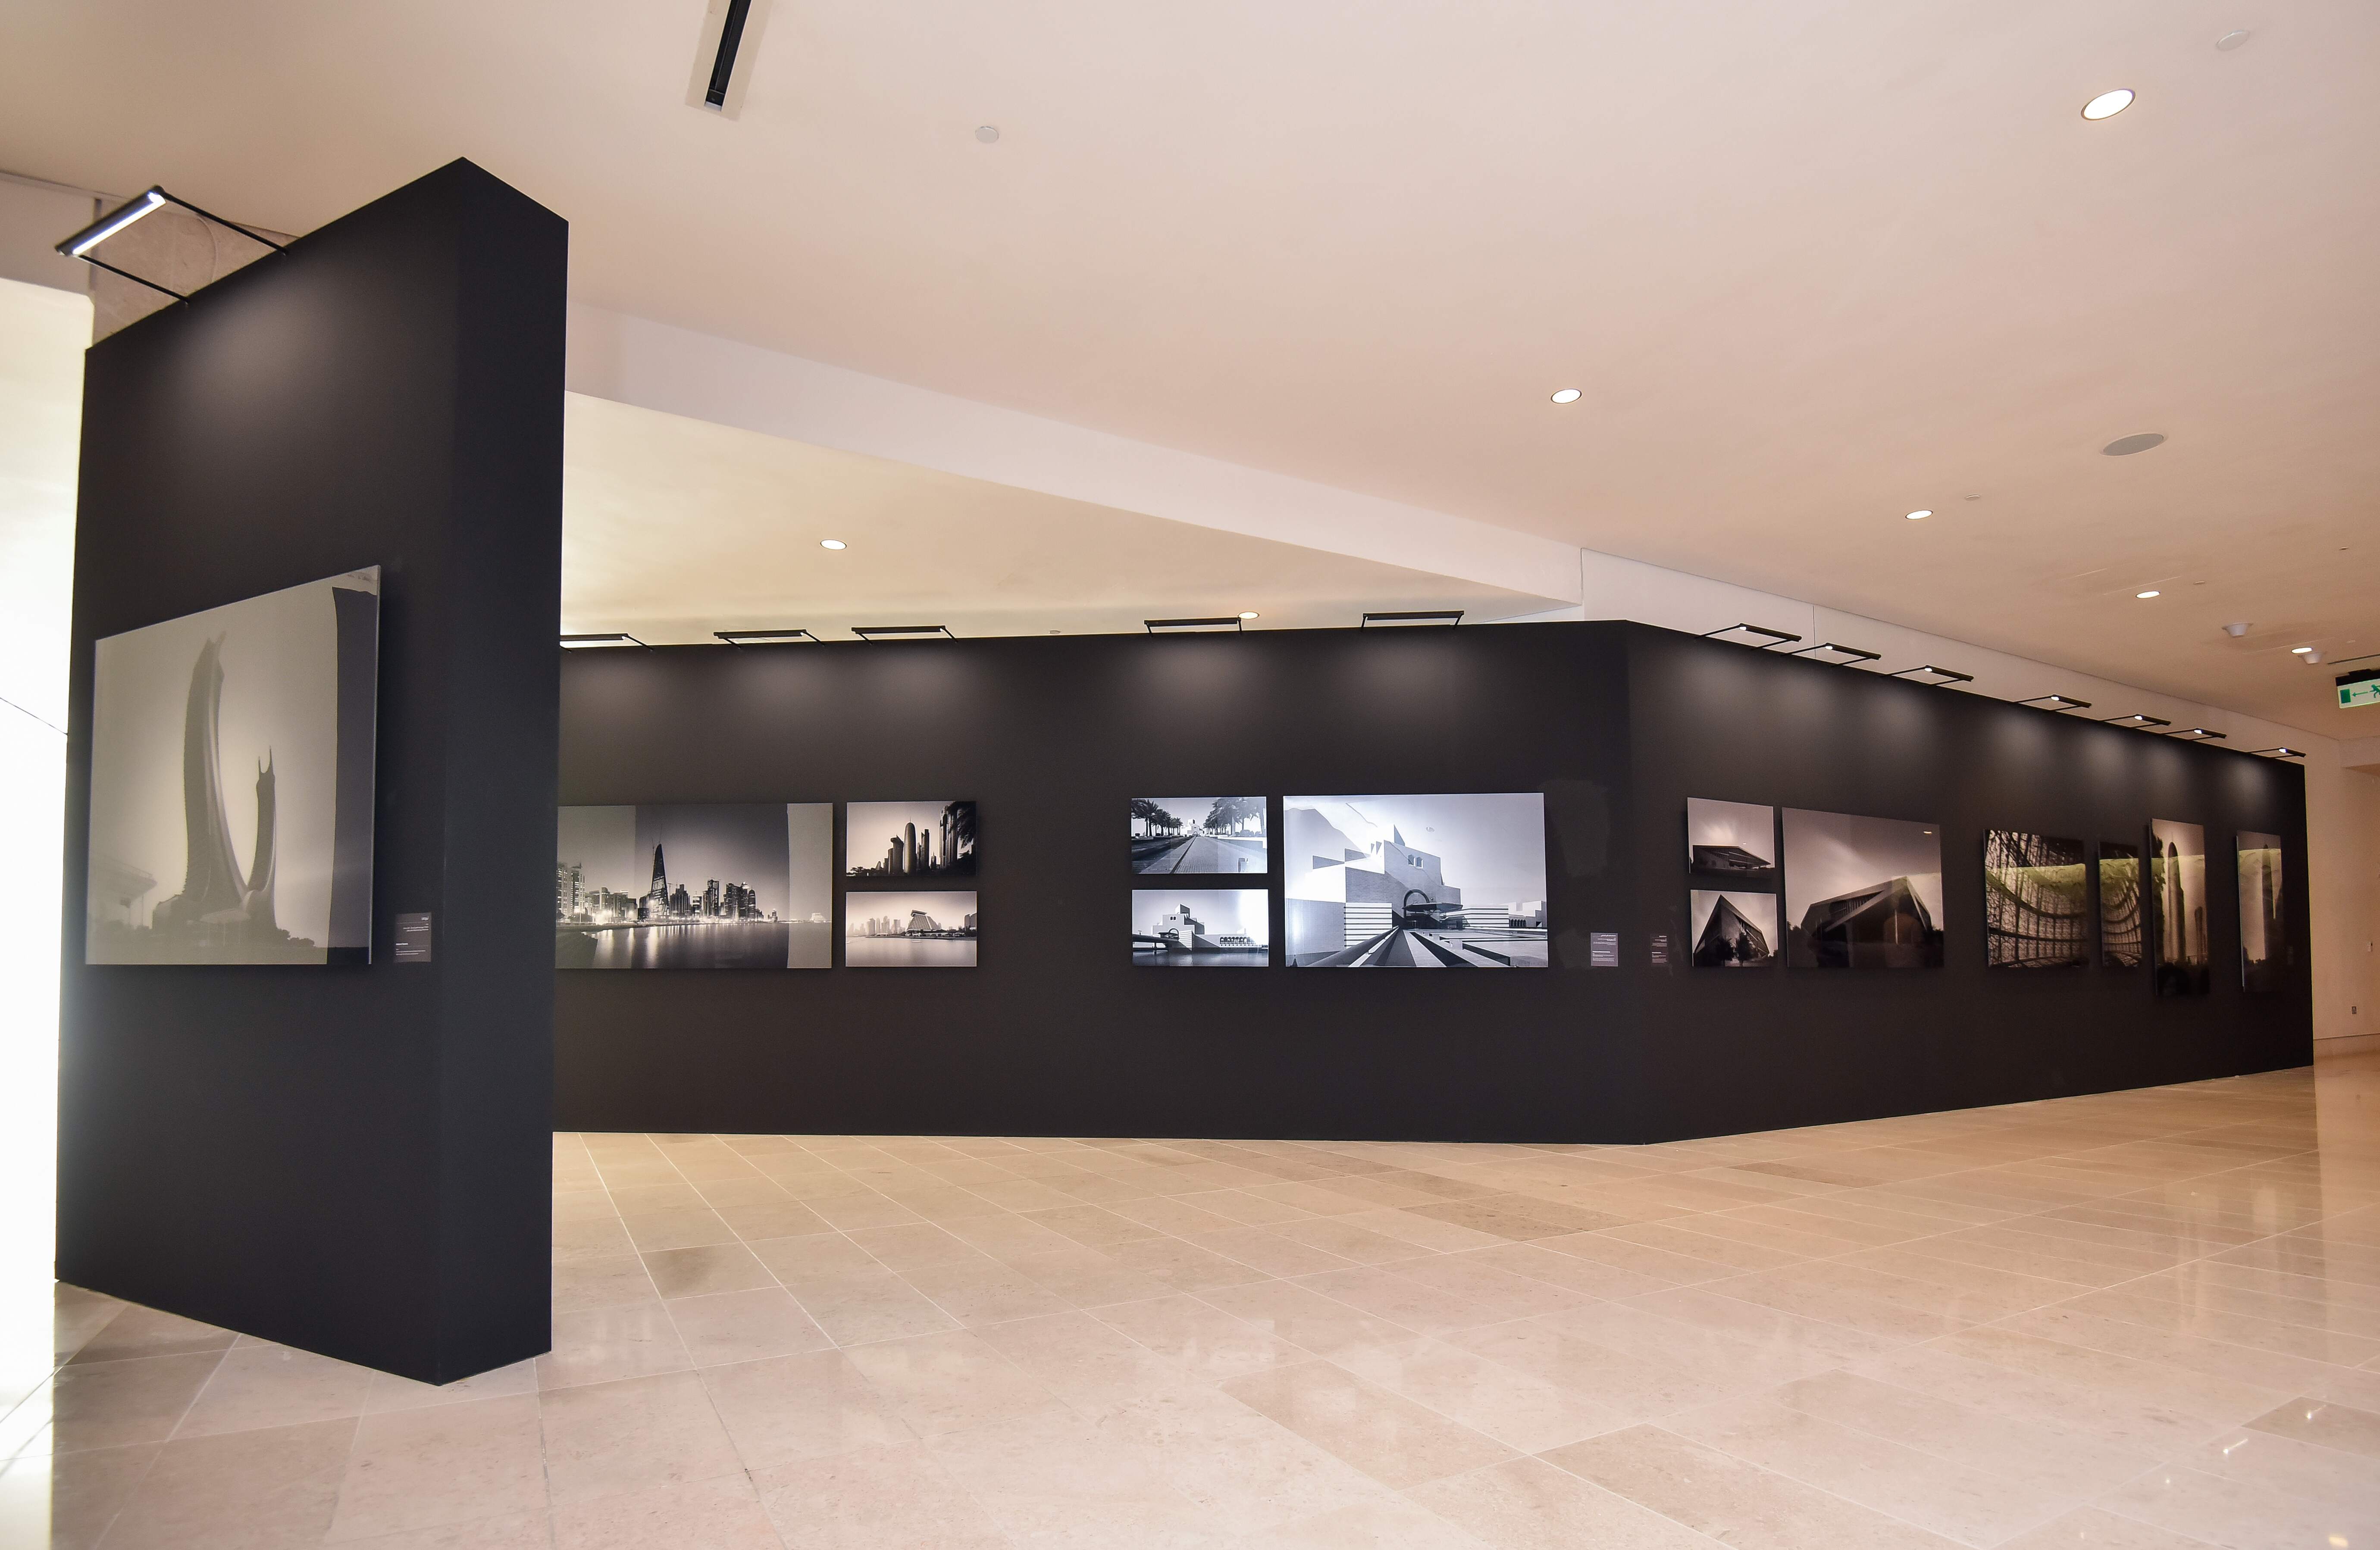 معرض "عصر العمارة الحديثة في قطر"